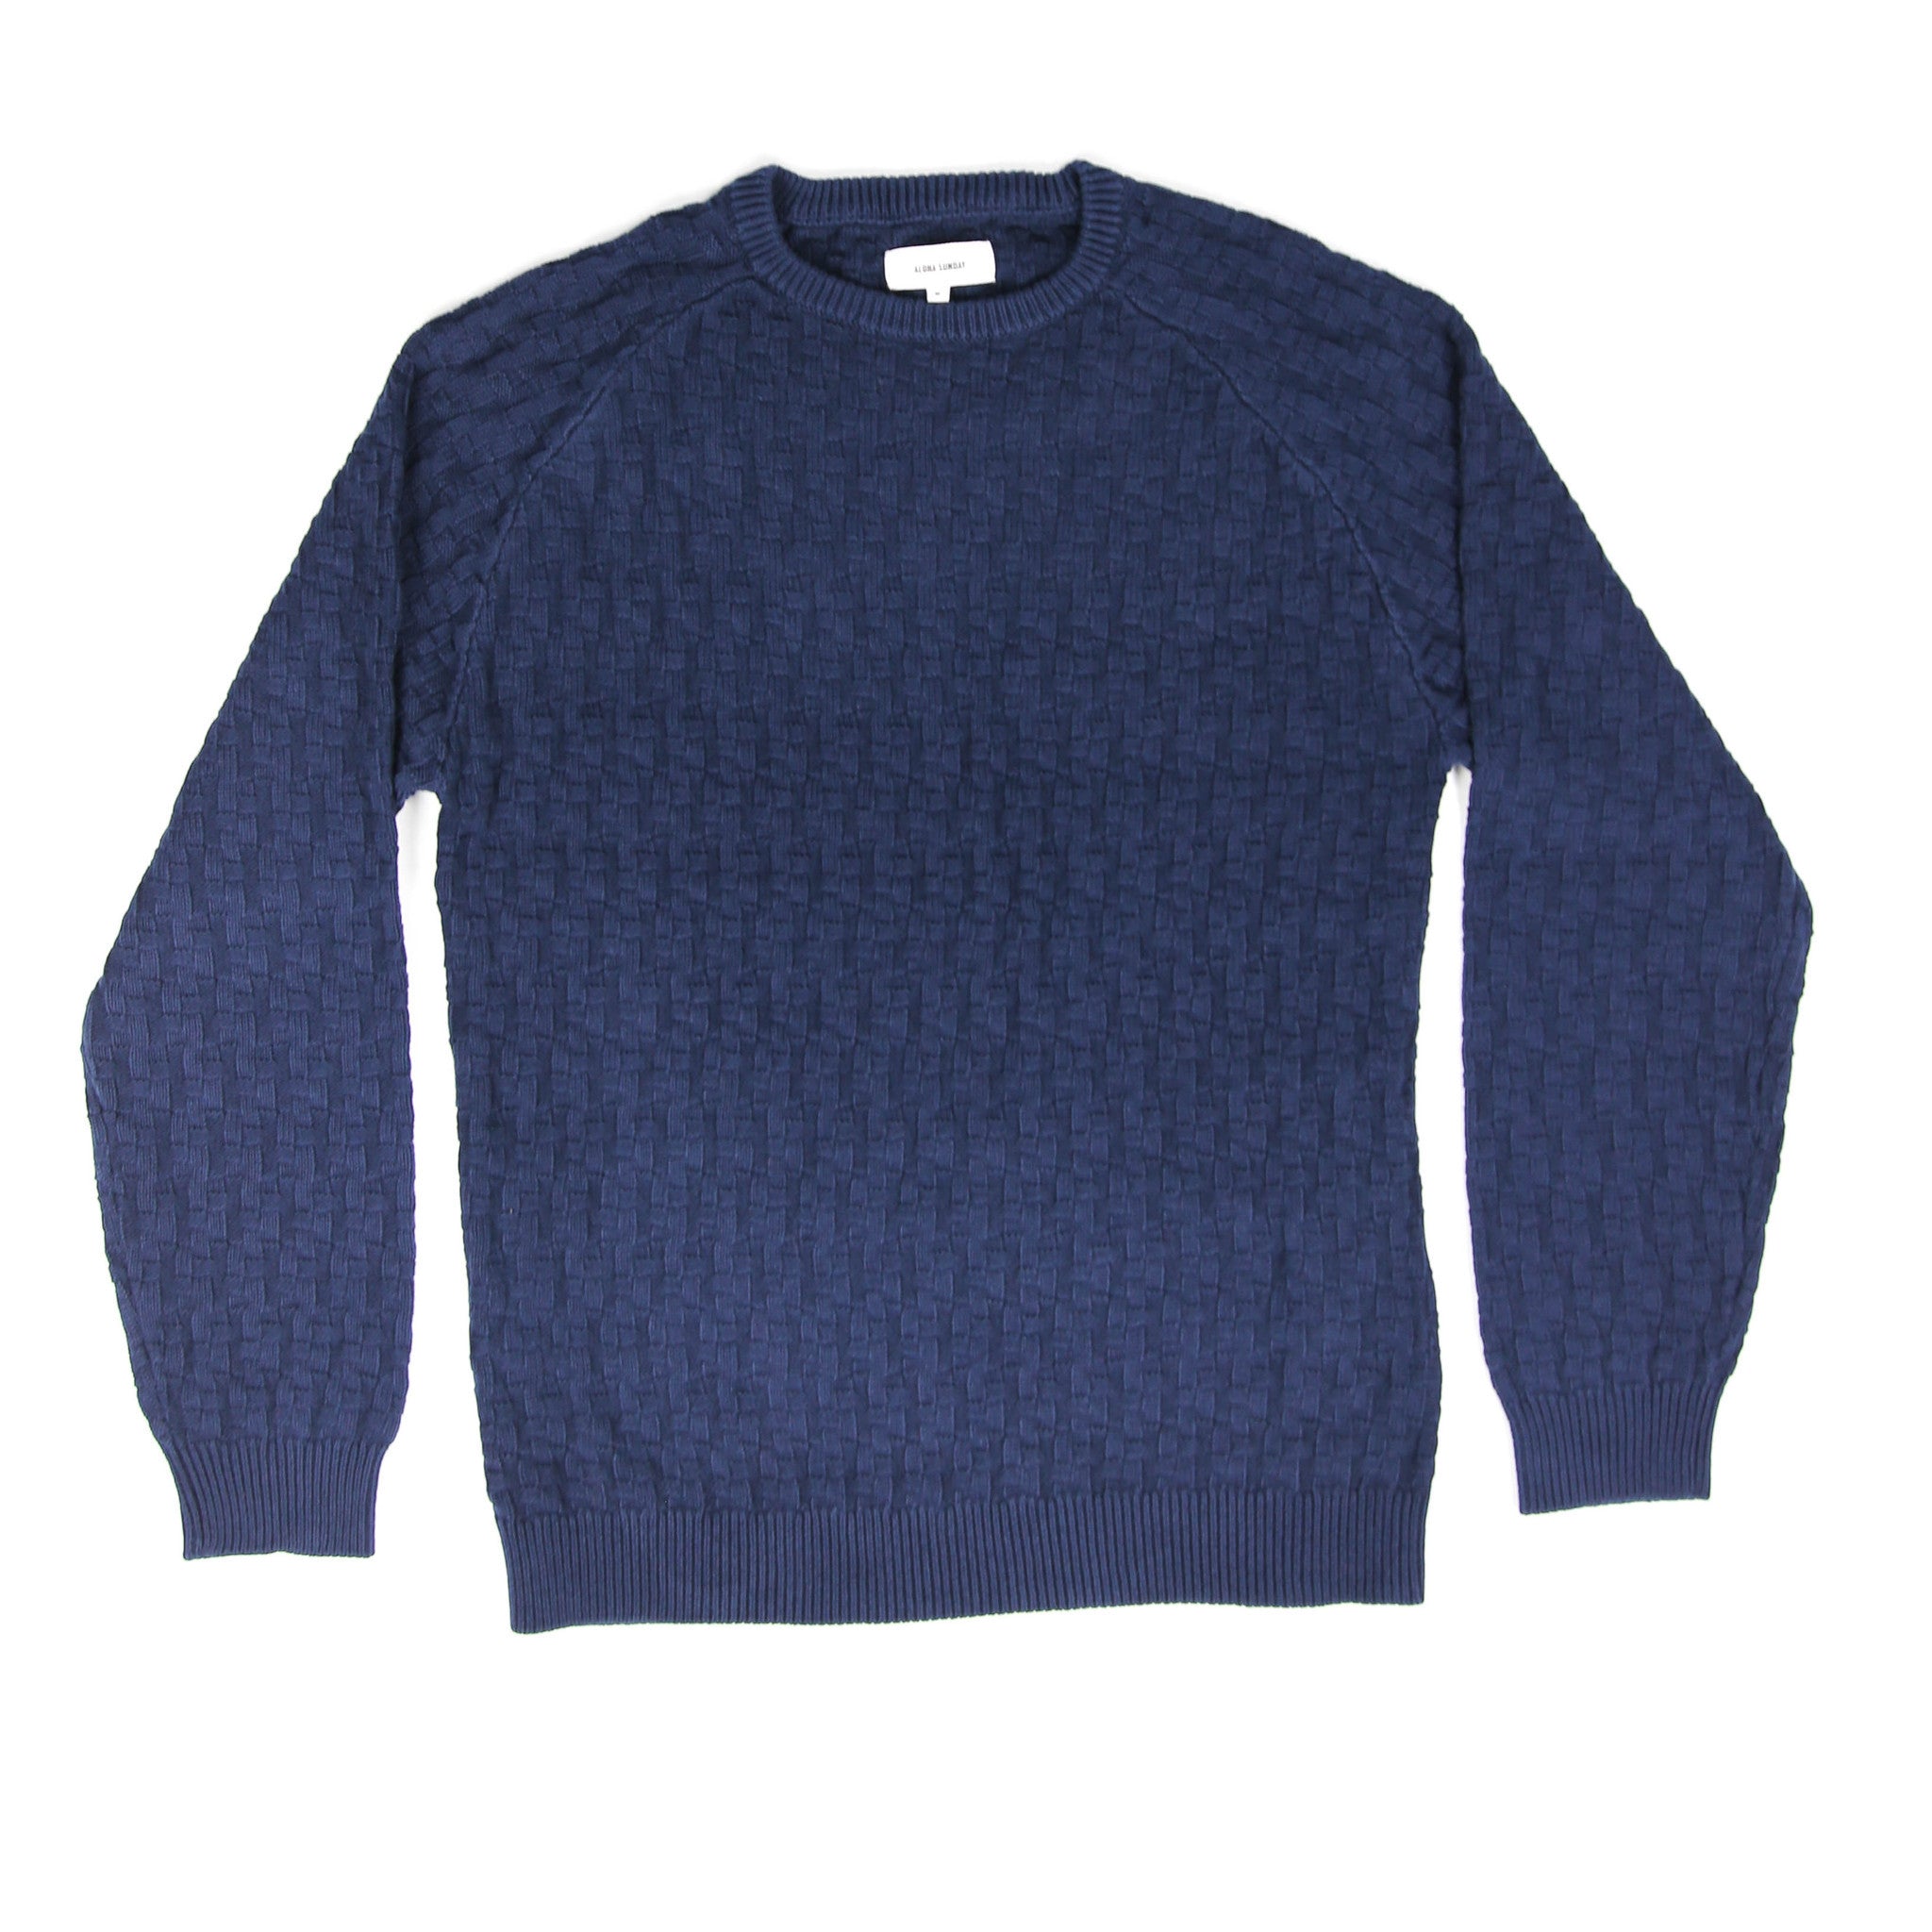 Relief Sweater - Navy